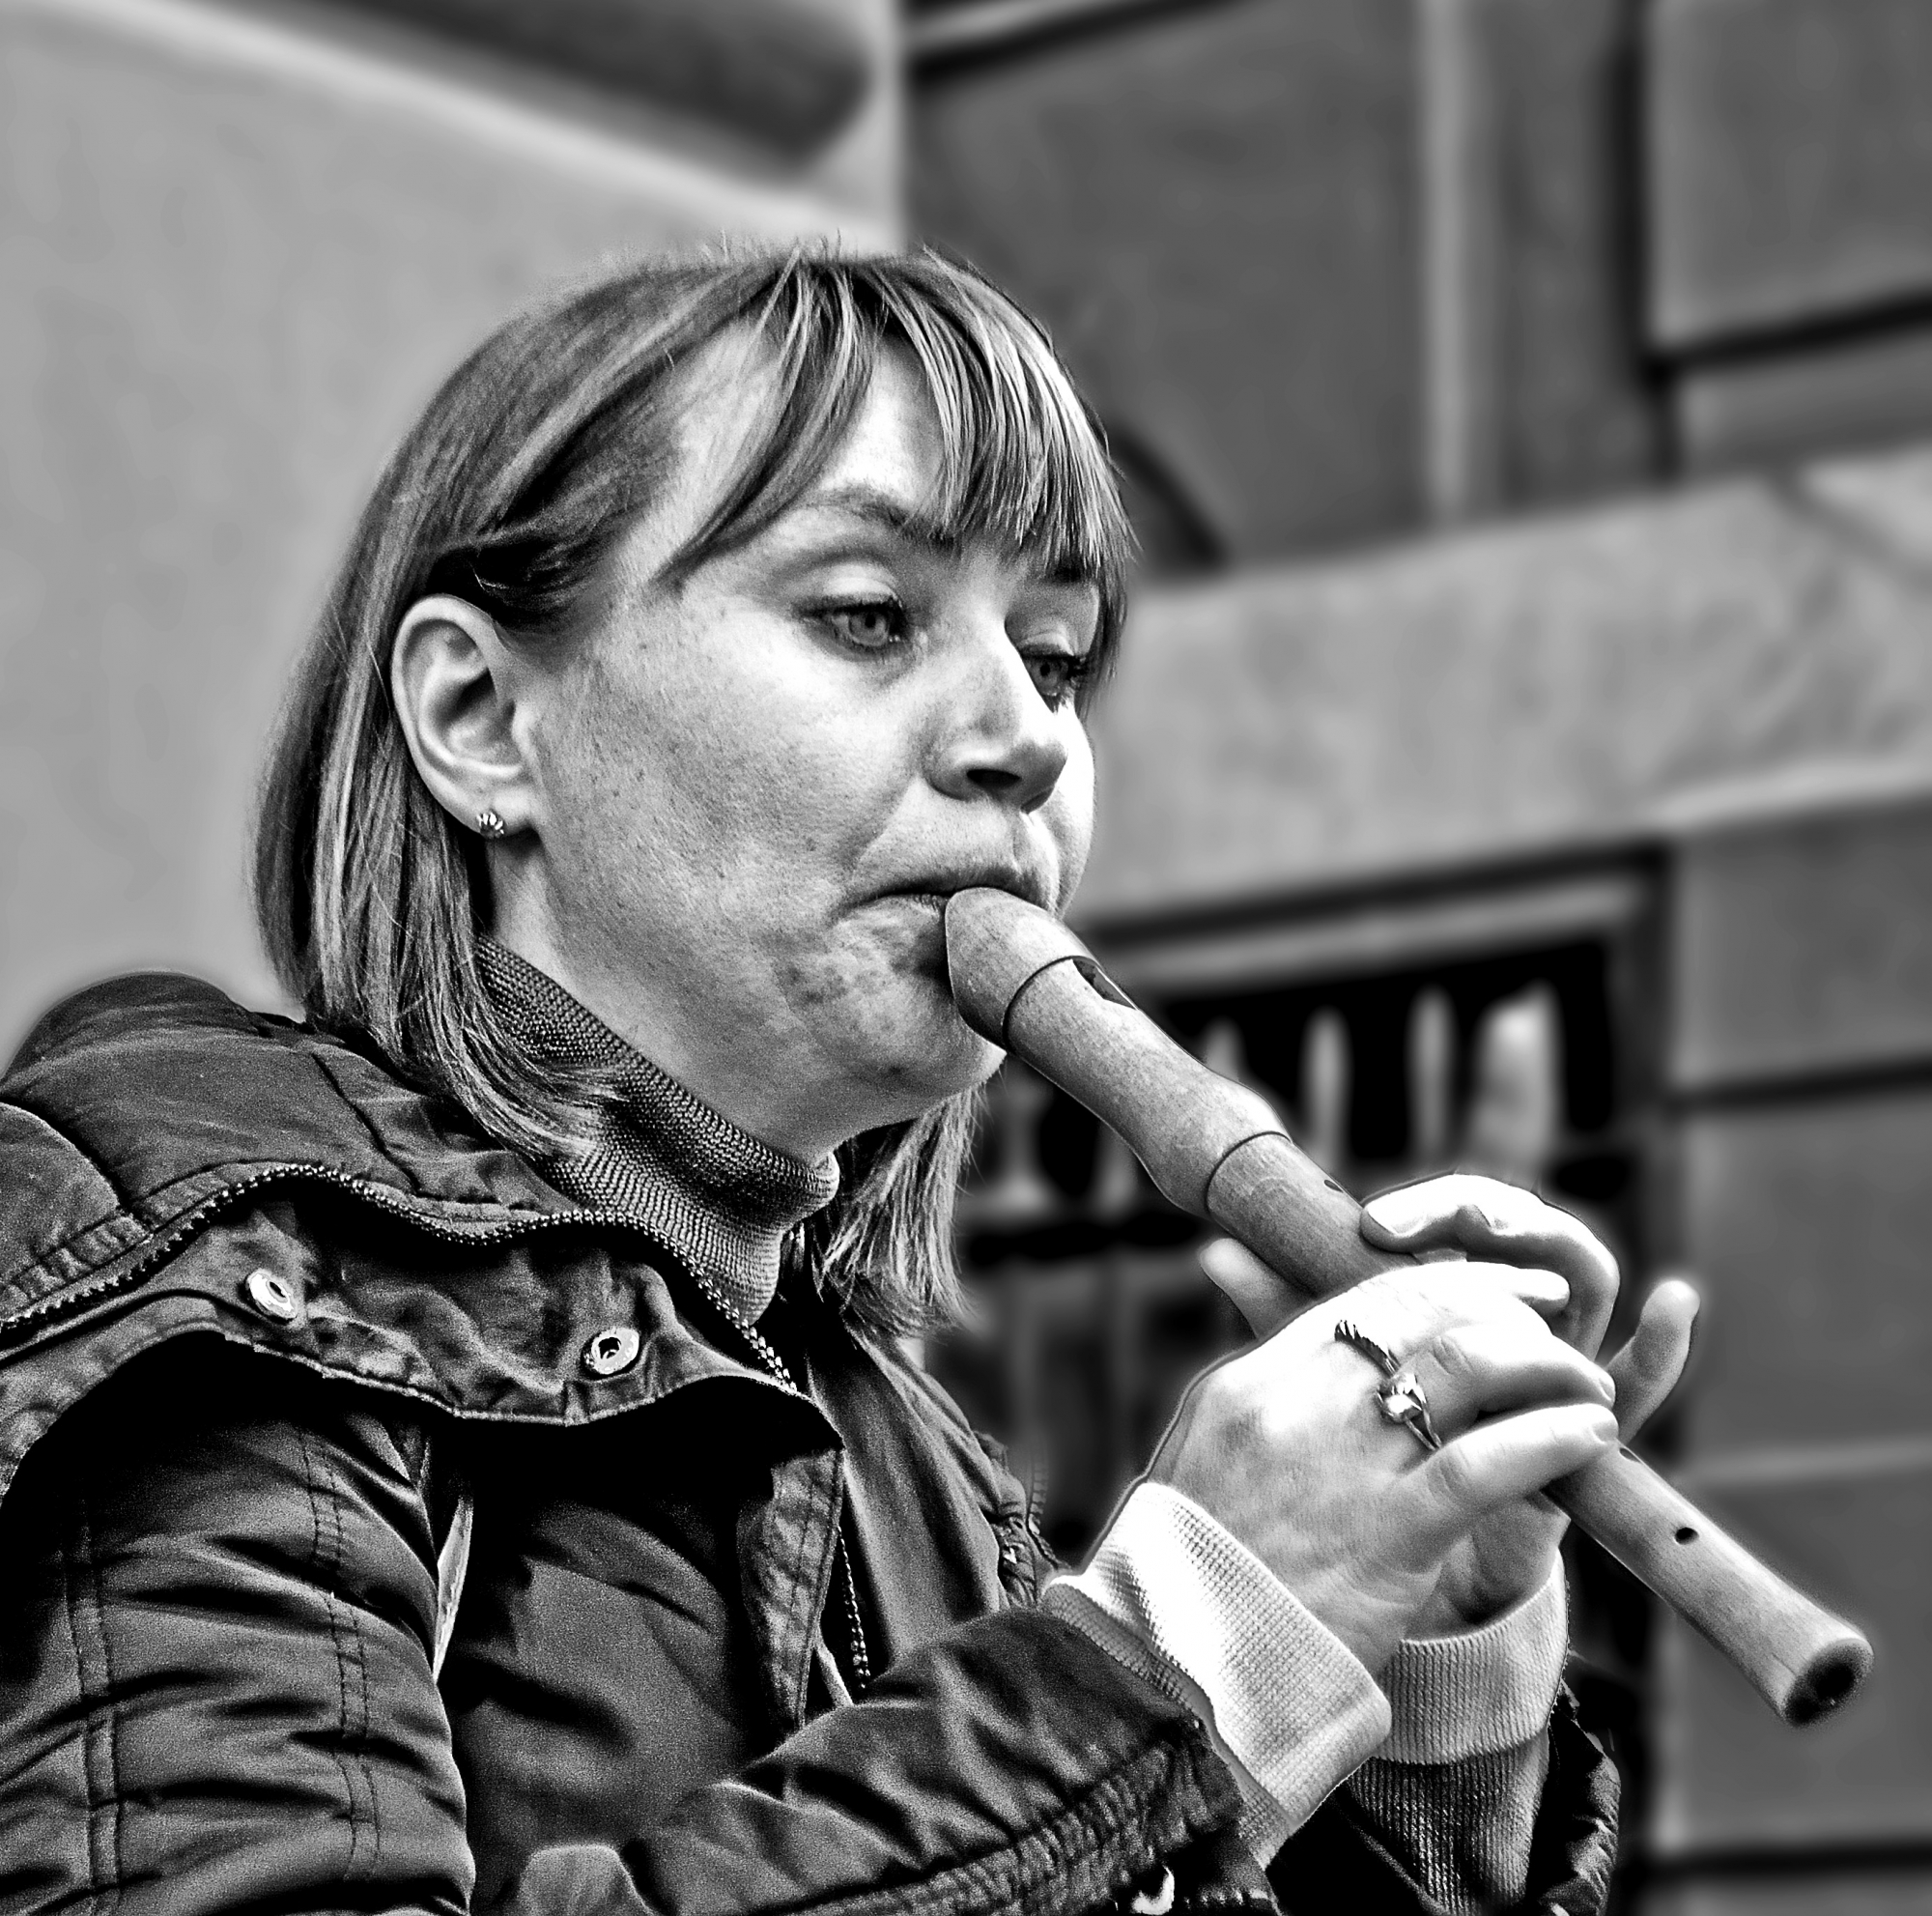 La Flautista di Caterina Ottomano